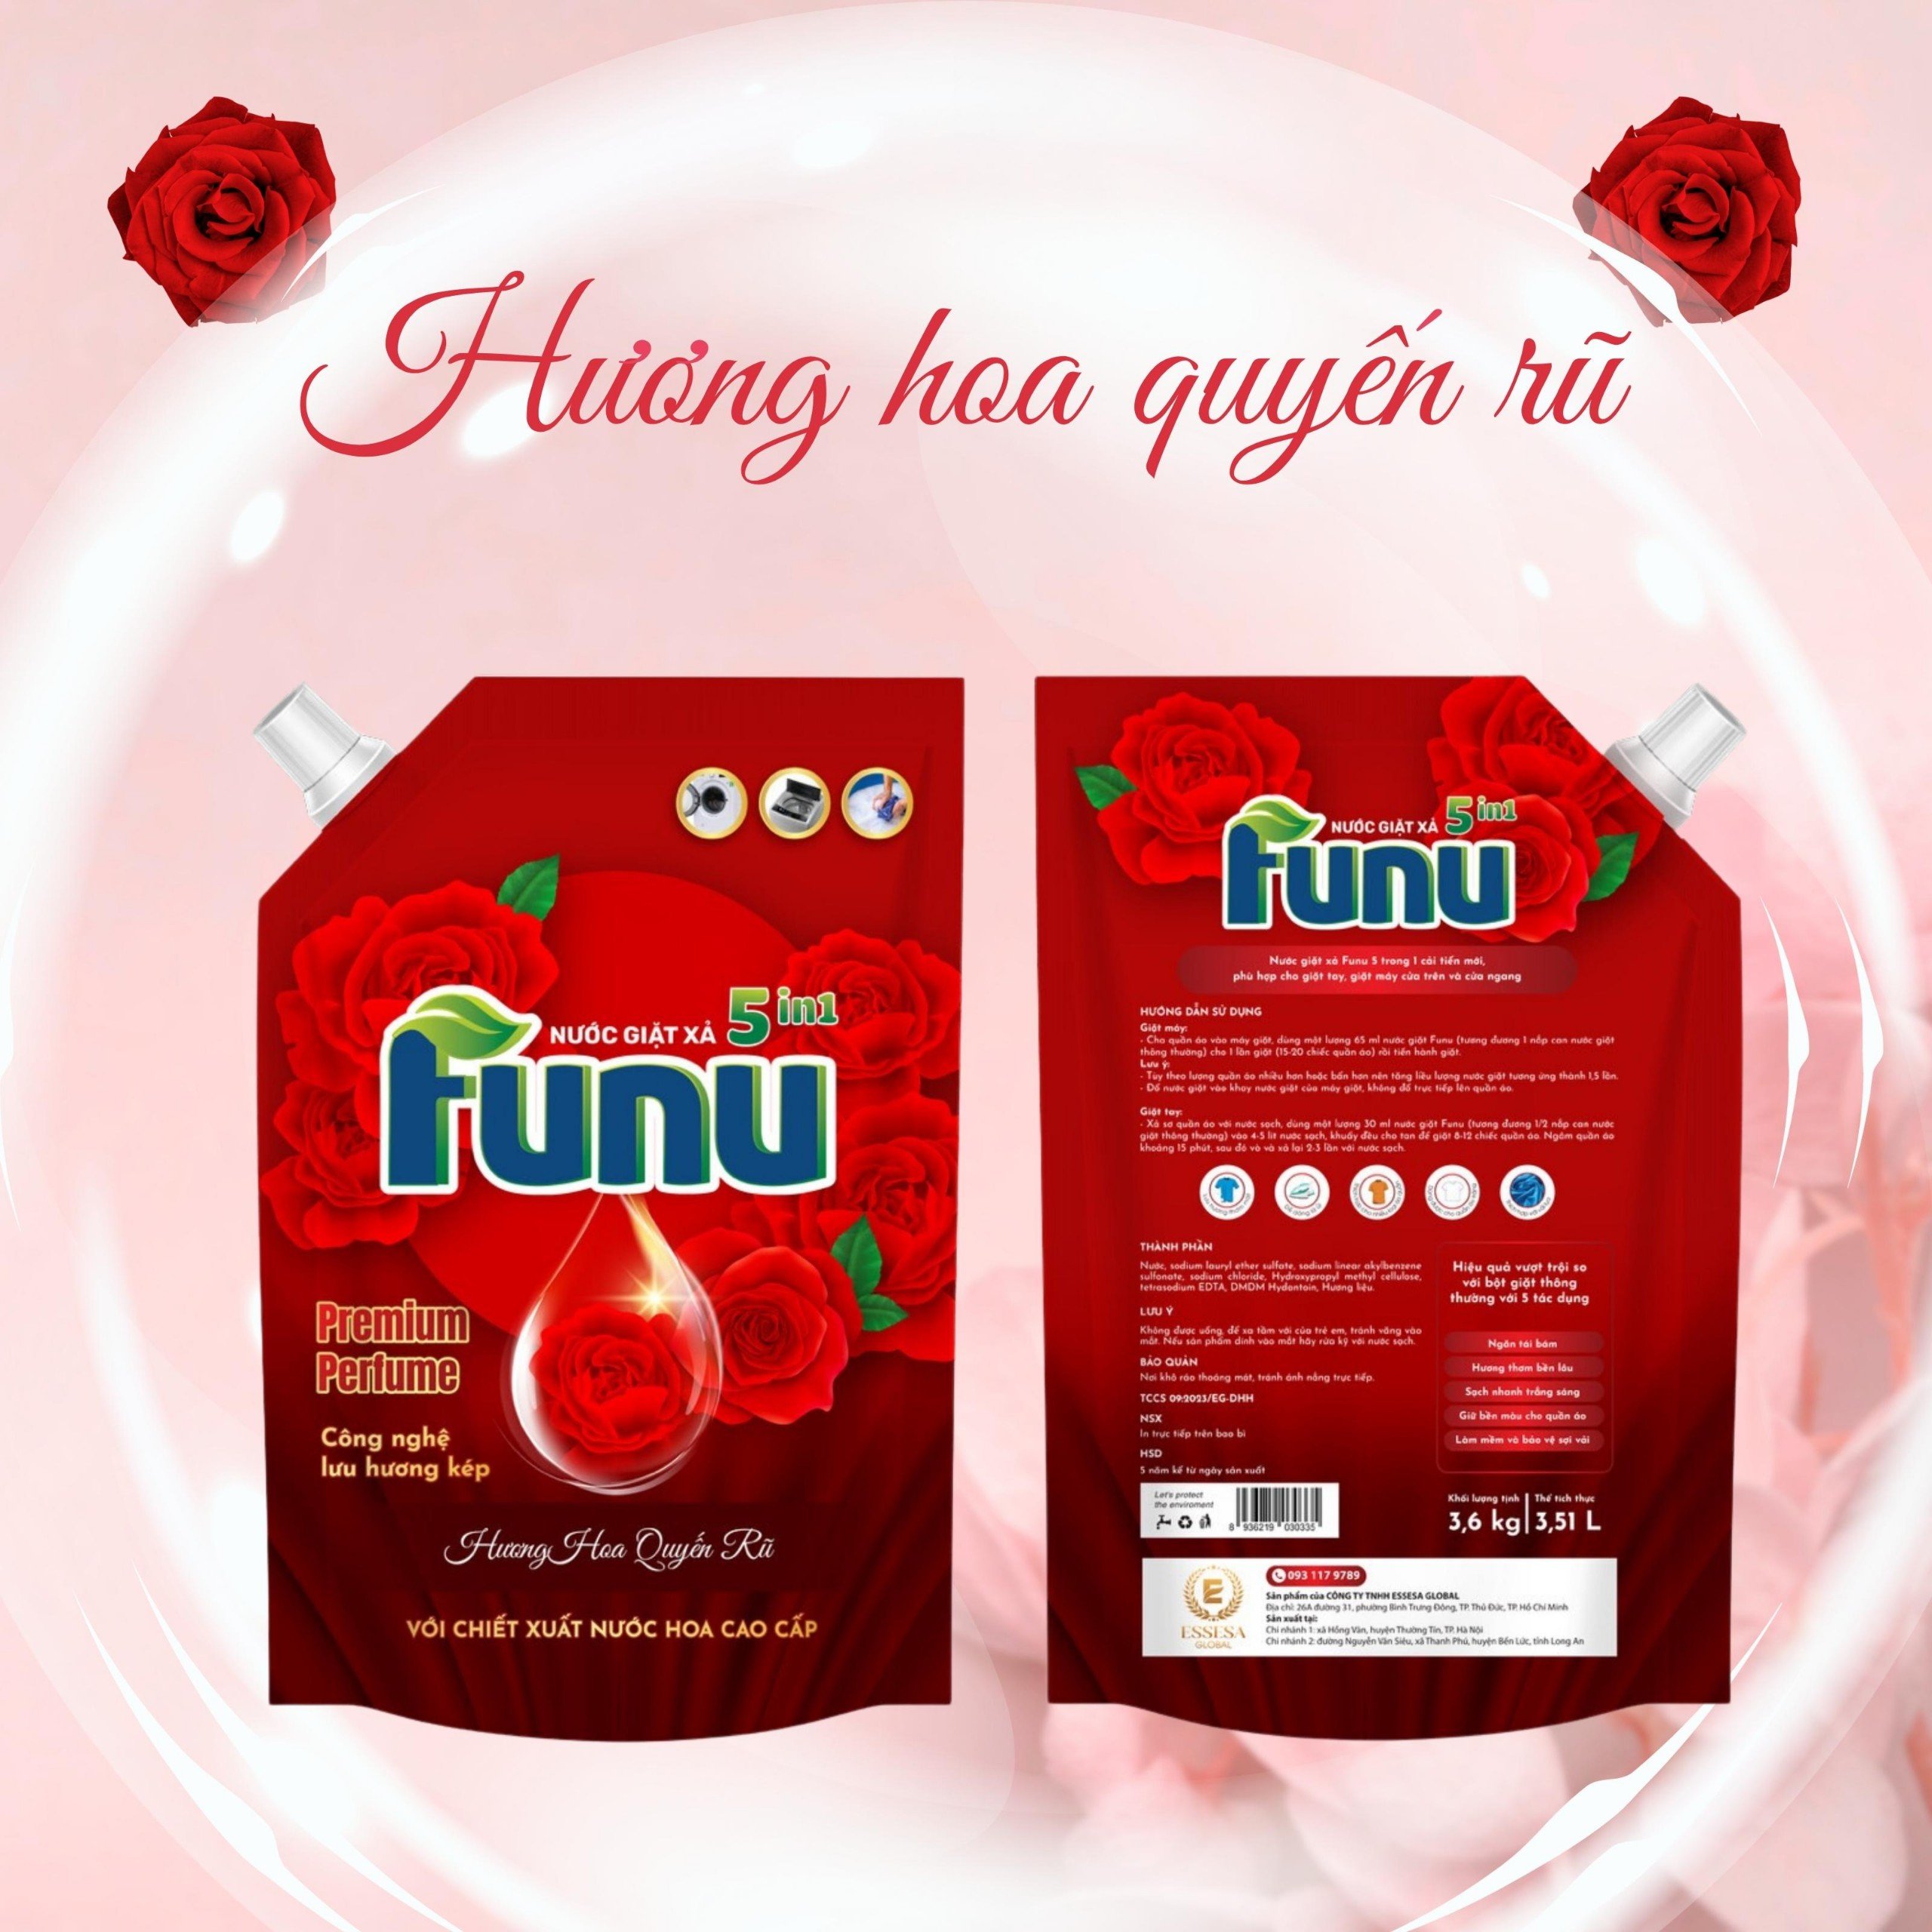 Túi nước giặt xả Funu 3.6kg 5 in 1 hương nước hoa cao cấp, giặt sạch ngăn tái bám, giữ bền màu cho vải, làm mềm và ảo vệ sợi vải - Hàng chính hãng